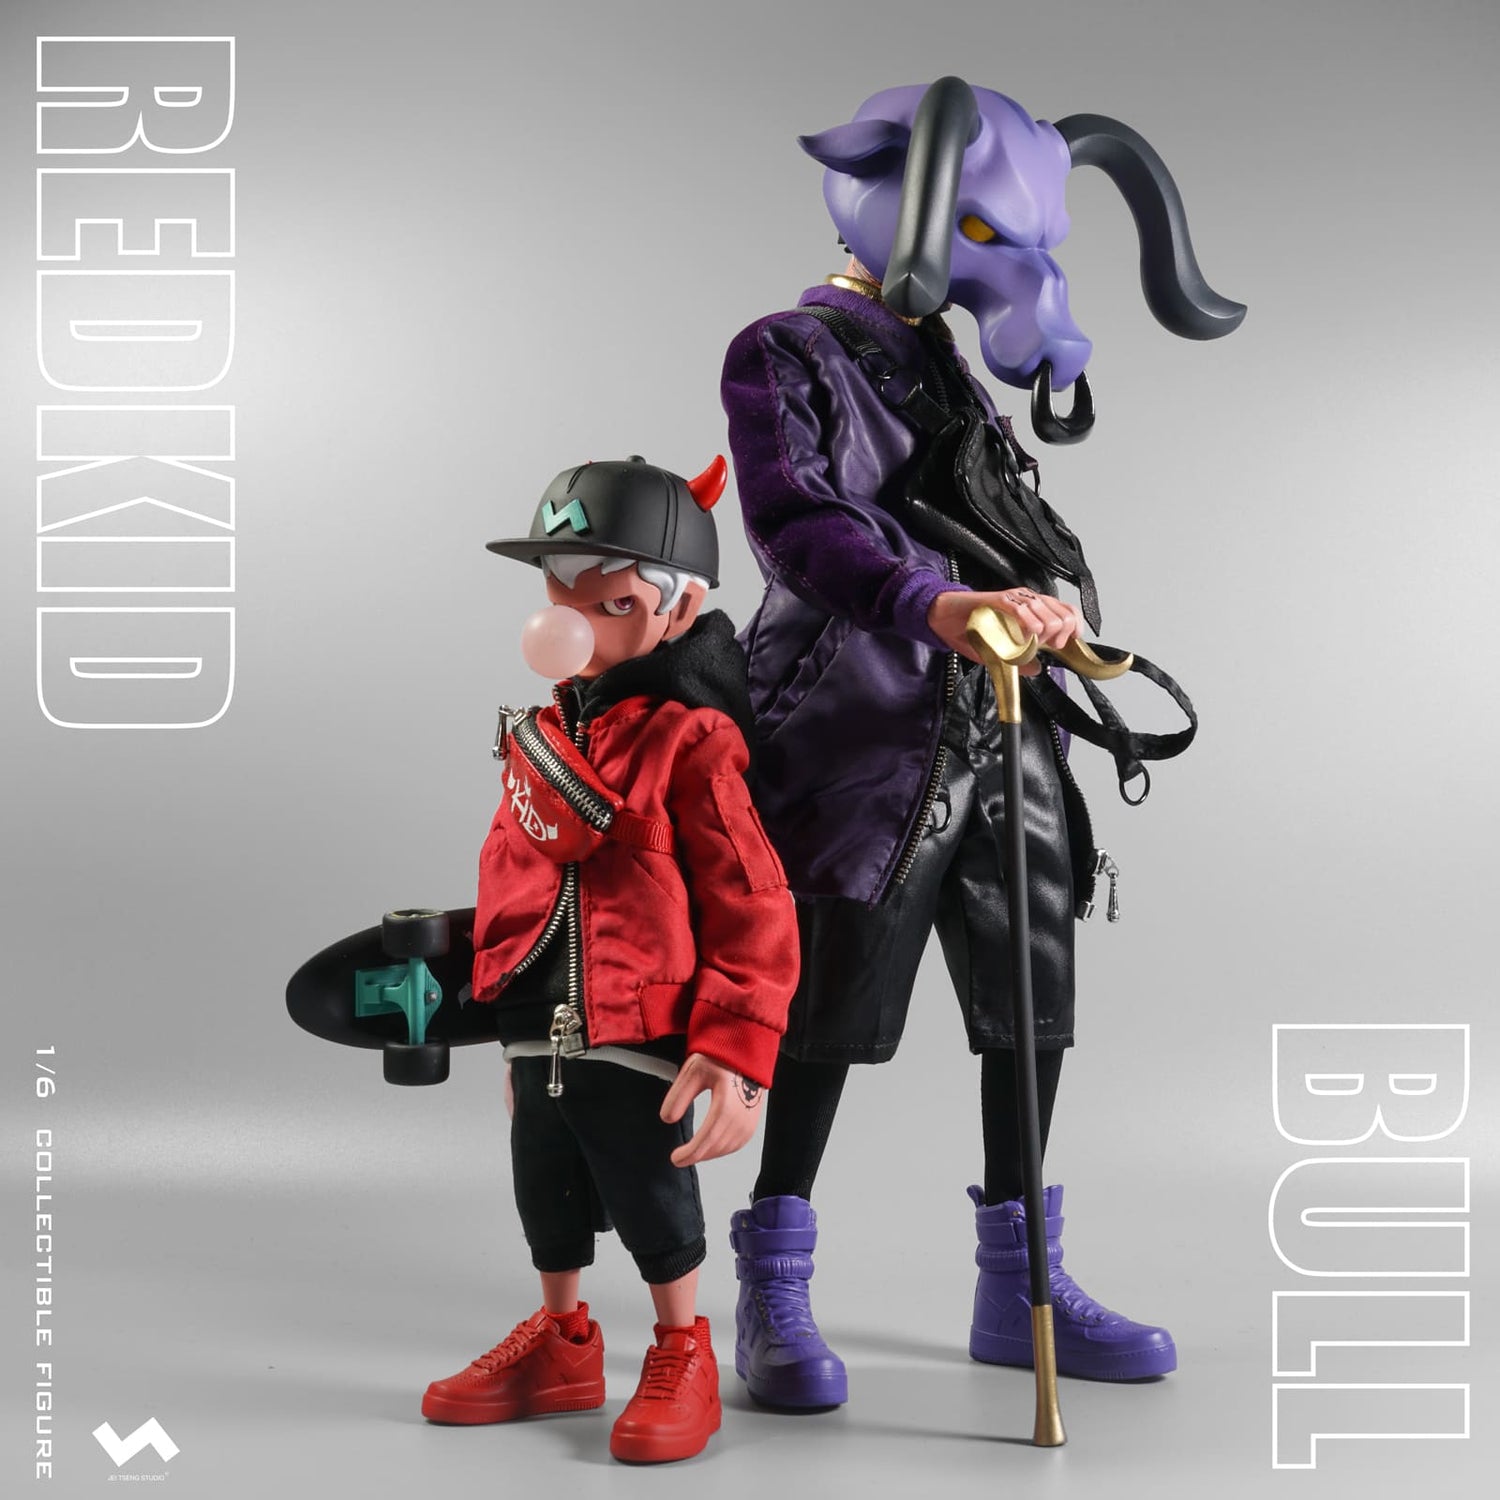 TMNT Raphael & Donatello 1/6 scale action figures by JT Studio